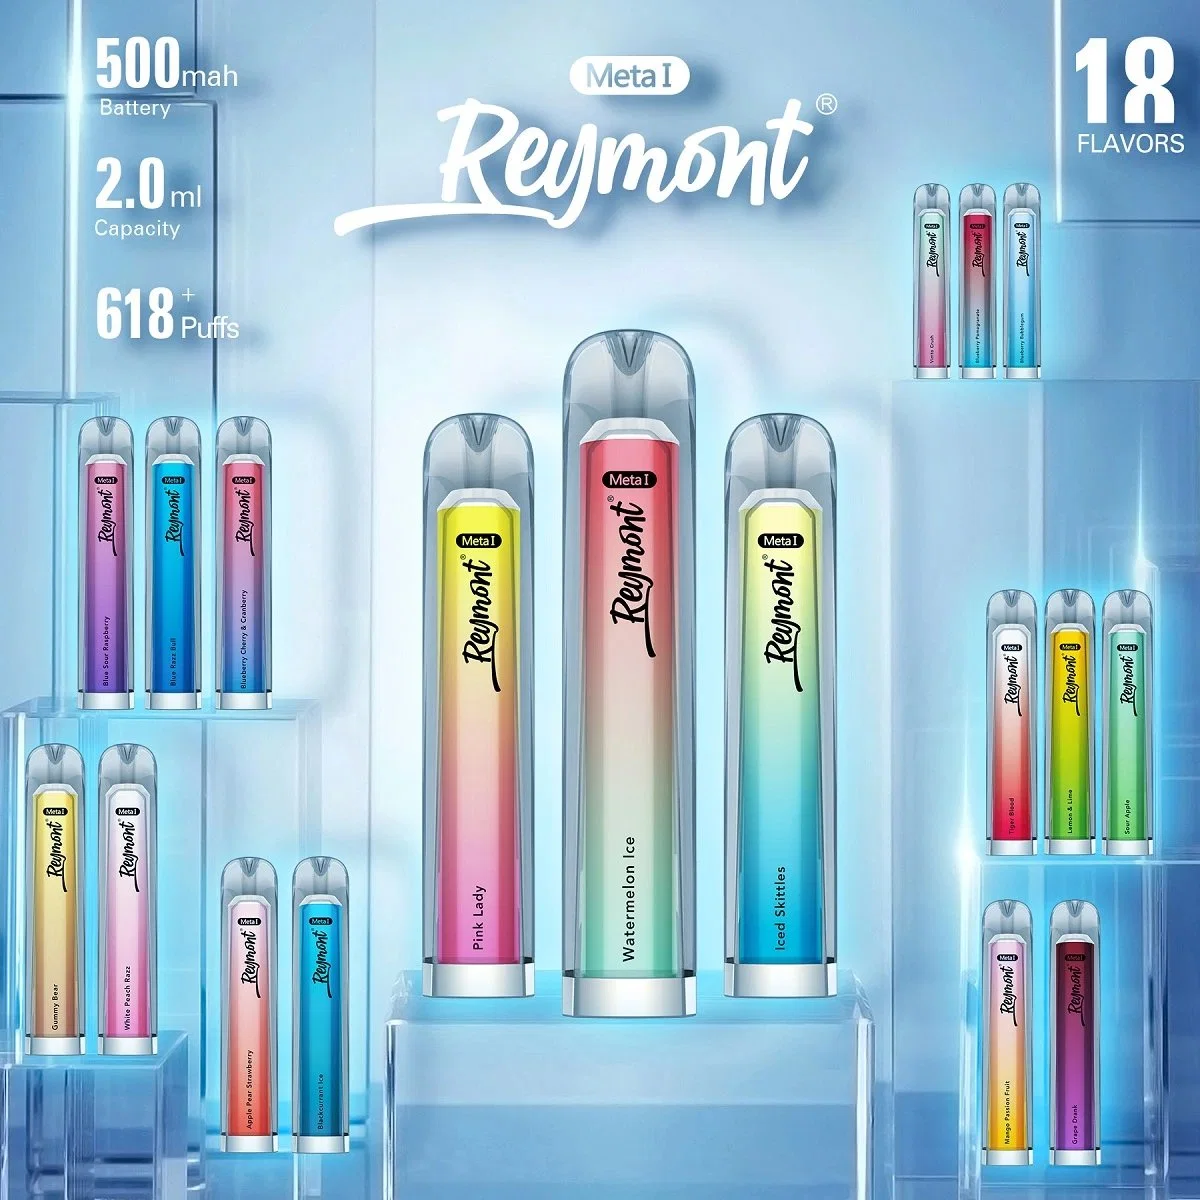 Reymont Meta я хотел бы Crystal Tpd имеется сетка катушки зажигания до 618 Puffs одноразовые Электронные сигареты Vape пера